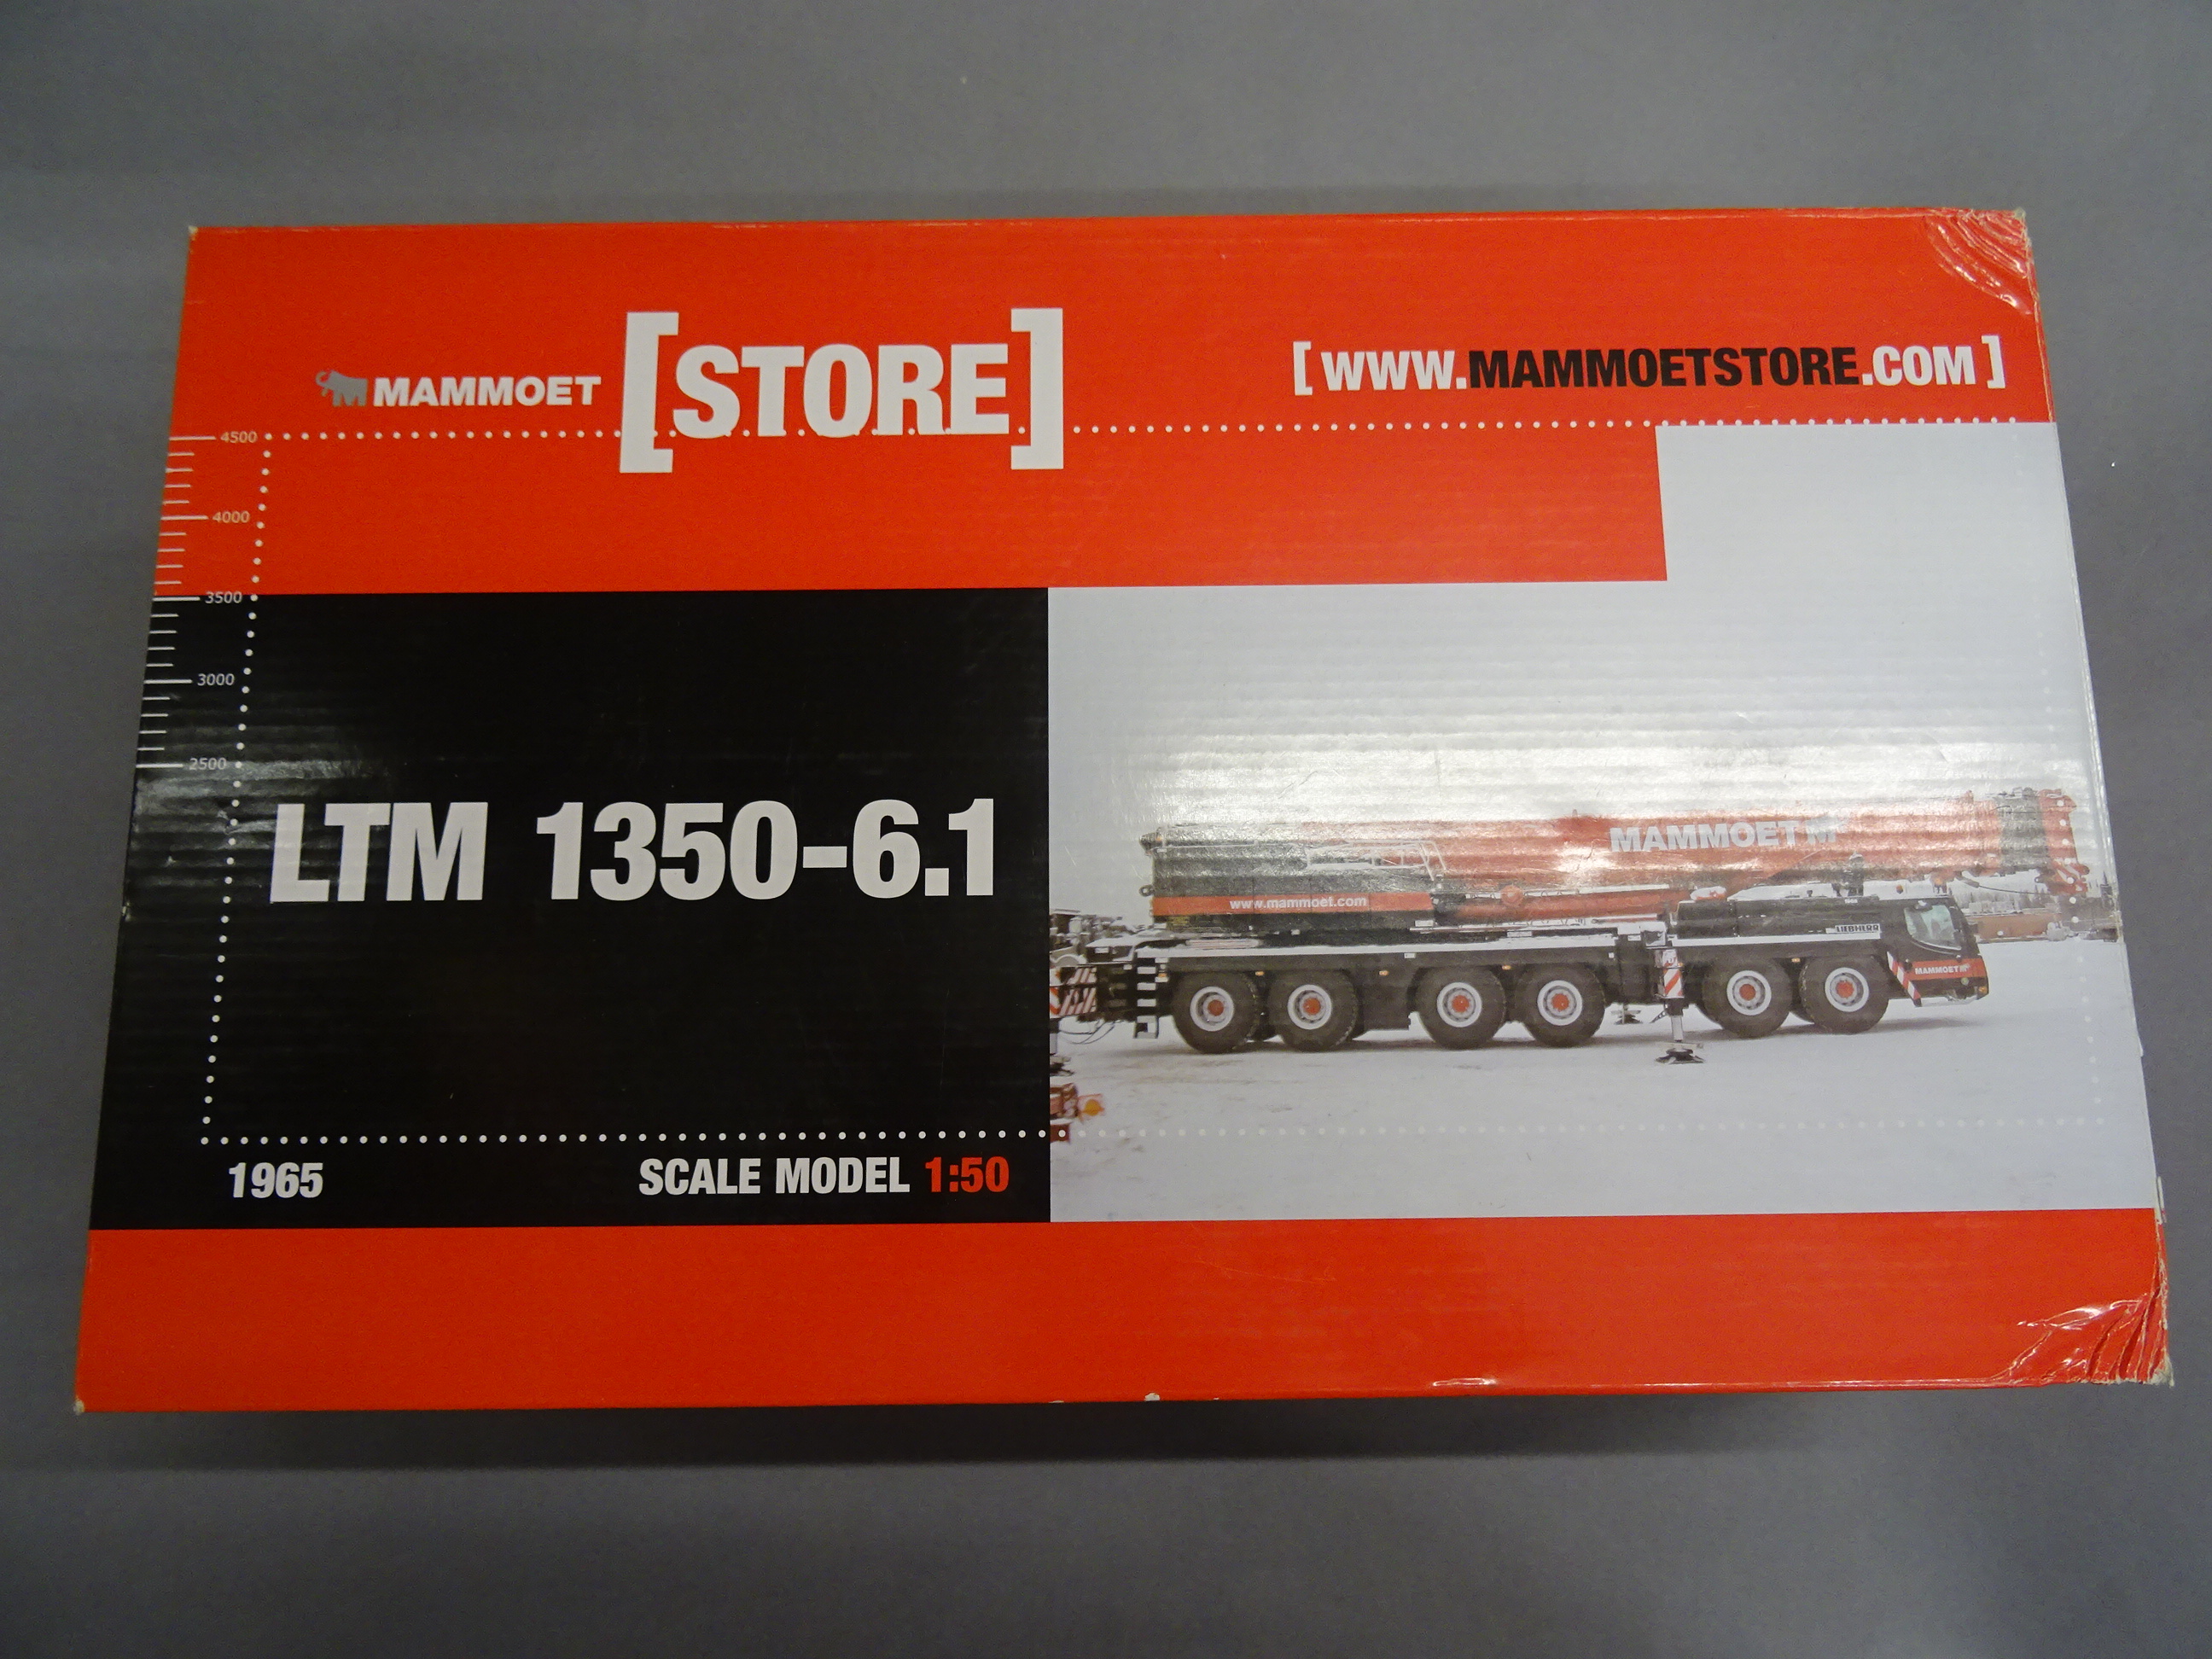 Boxed WSI Models ltd edn 1:50 Mammoet construction 1965 LTM 1350-6.1 Mobile Crane, model